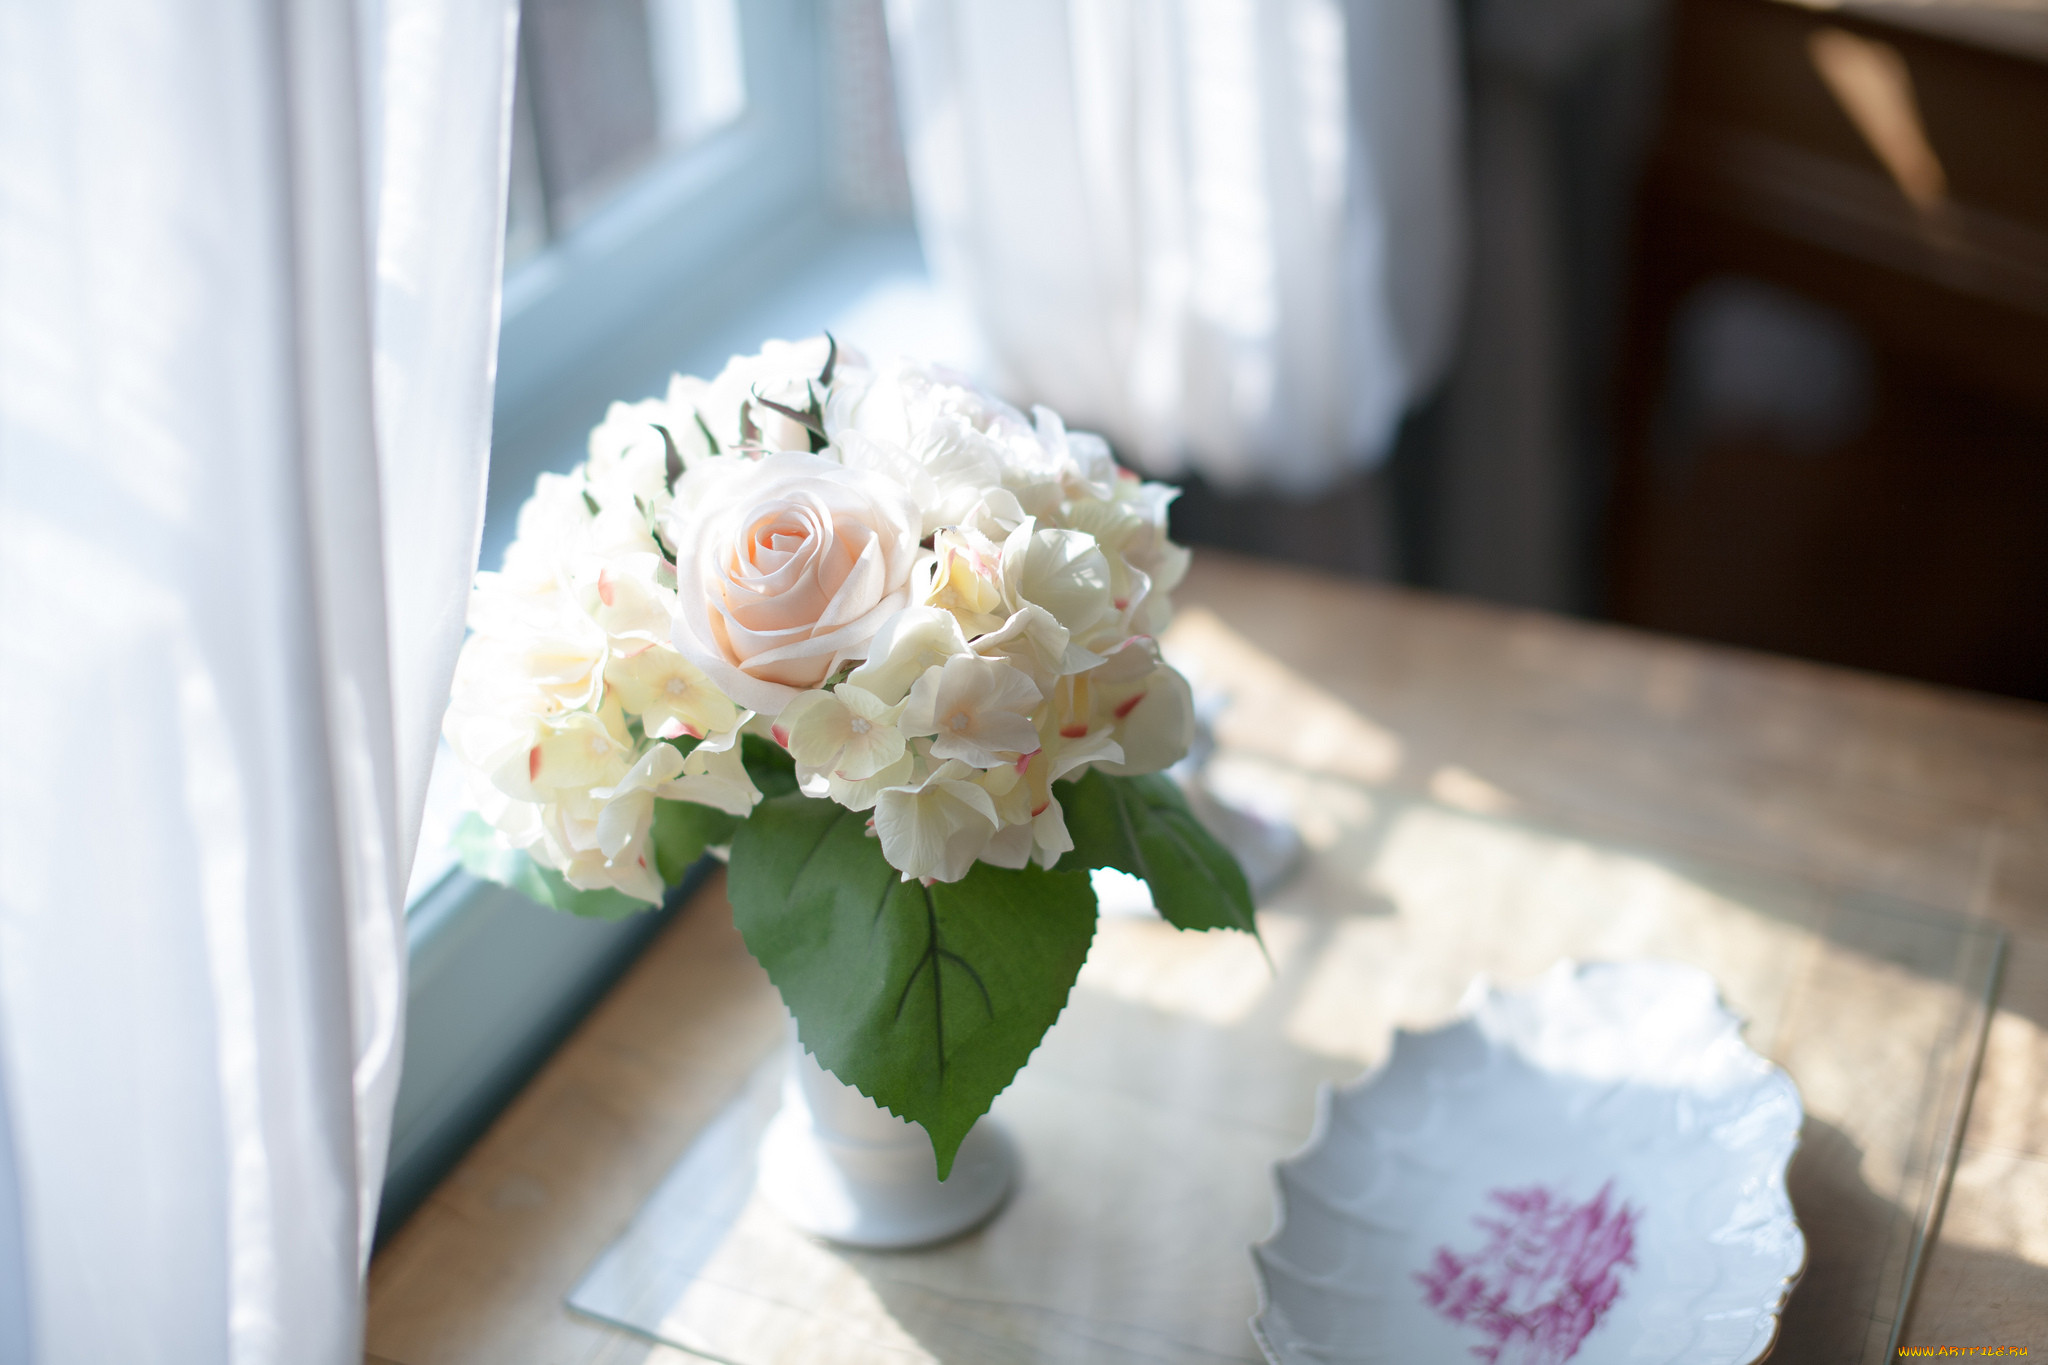 Цветы ставить в холодную или теплую. Букет роз на окне. Букет цветов на столе. Цветы в вазе на окне. Белые розы на окне.